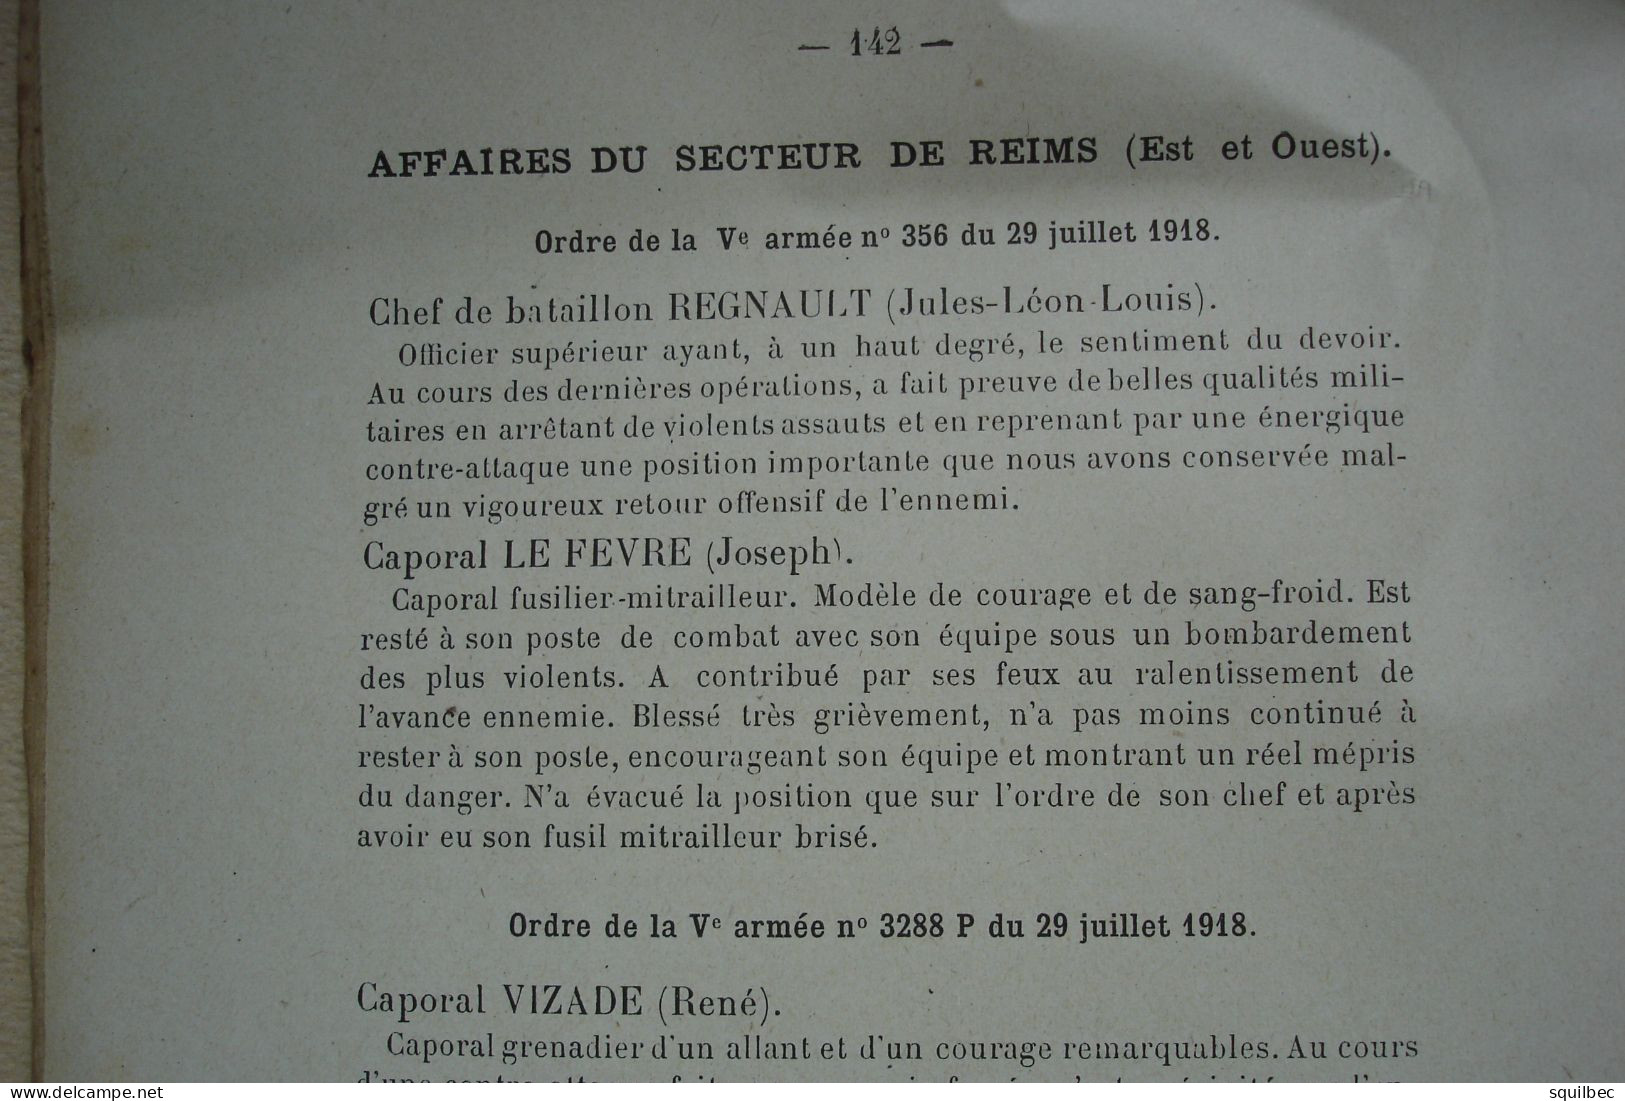 historique du 7eme régiment d'infanterie coloniale dans la guerre 14-18 , AISNE , chemin des dames reims, herpy